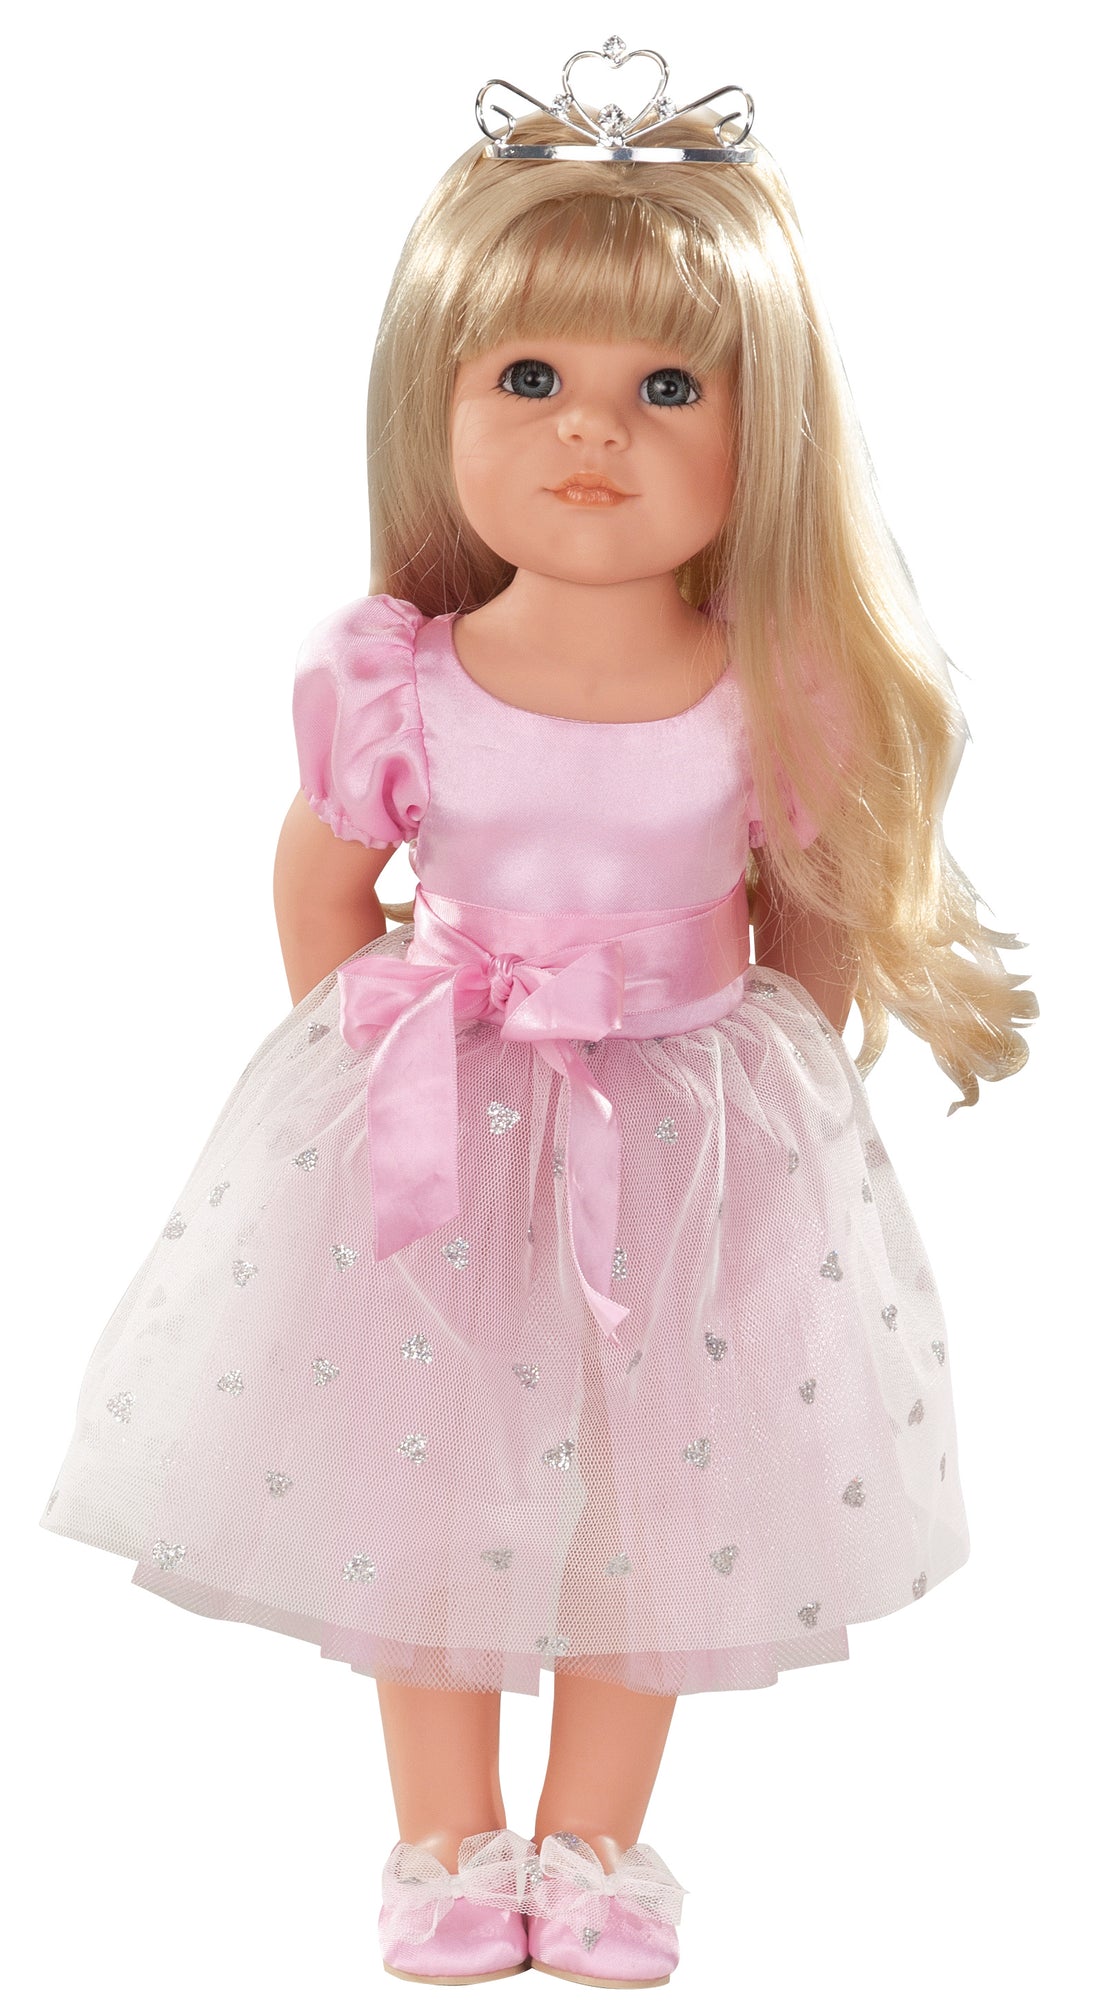 Handcrafted Doll - Götz Girl Hannah - Princess